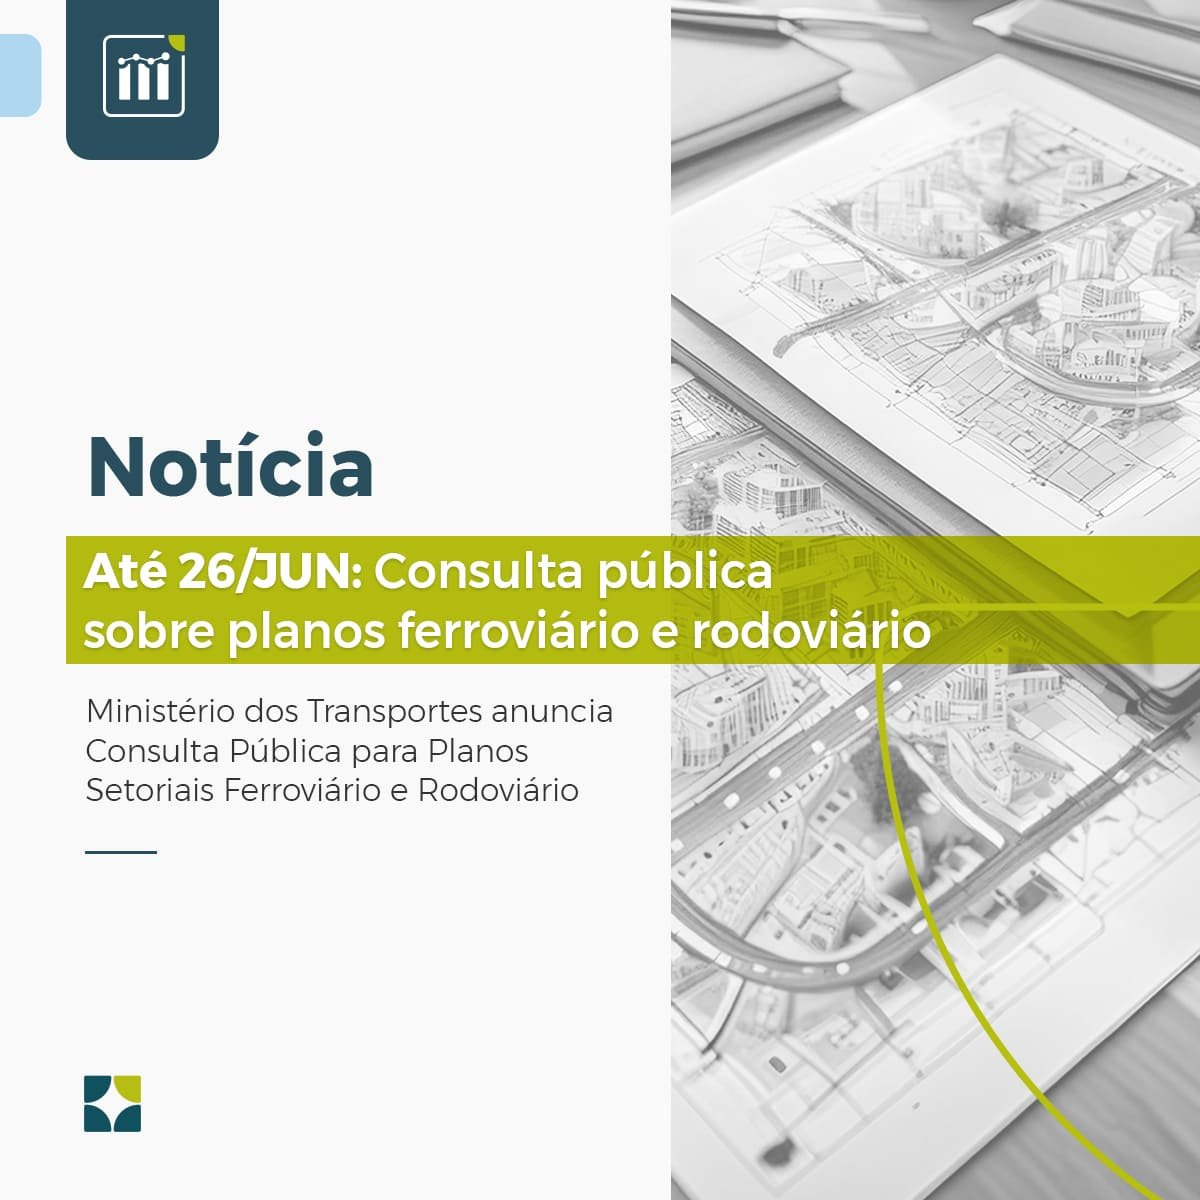 Até 26/JUN: Consulta pública sobre planos ferroviário e rodoviário